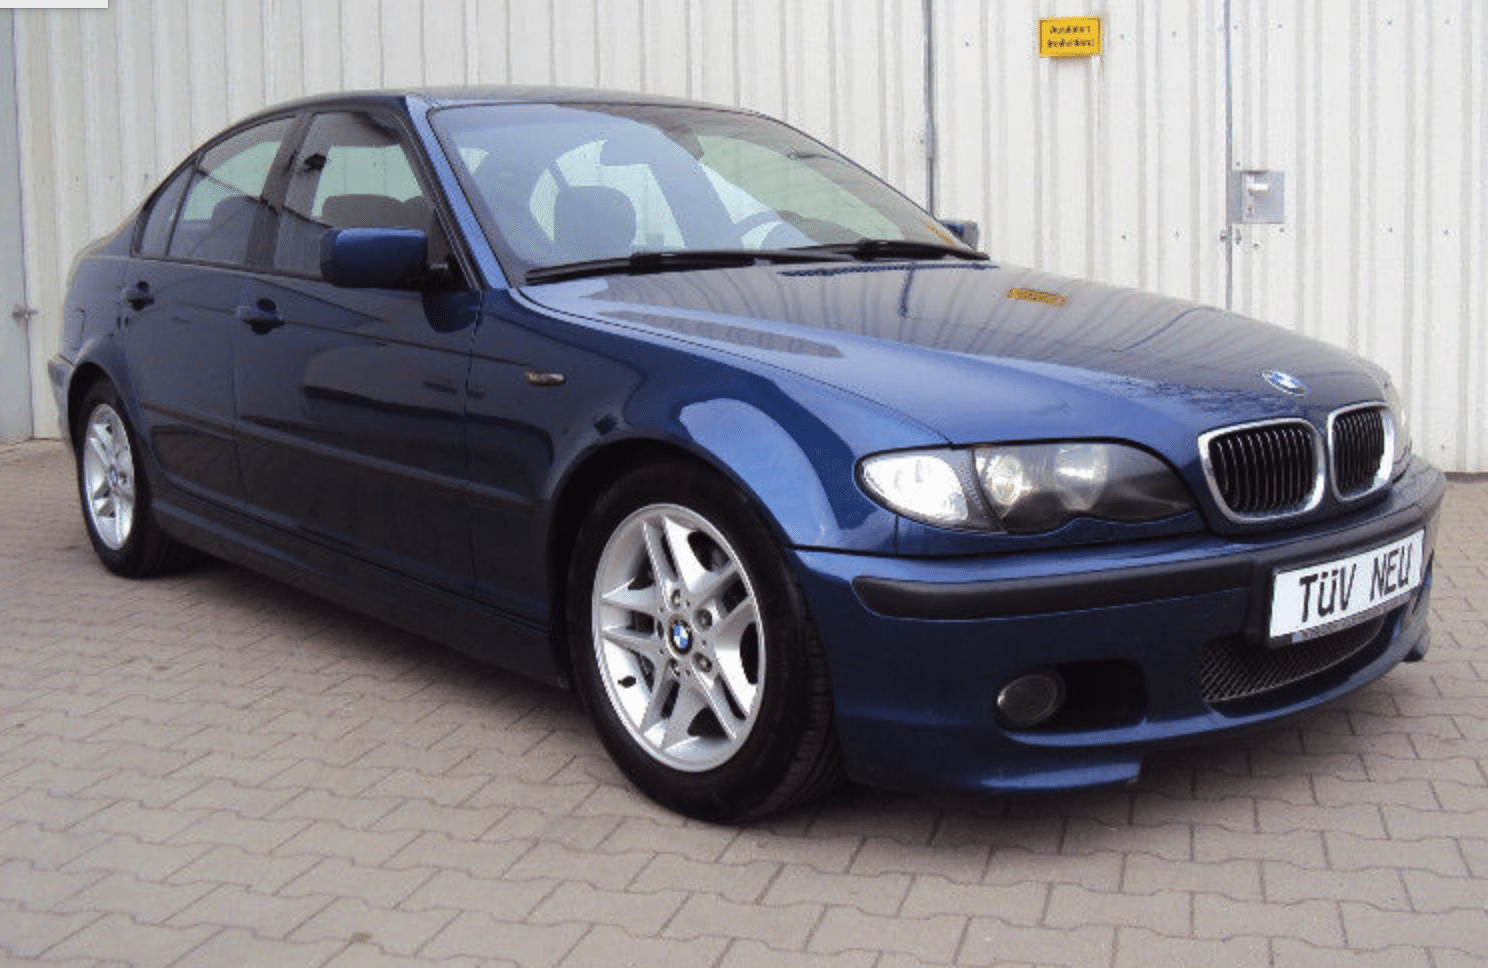 Descargar Catalogo de Partes BMW 320i 2003 AutoPartes y Refacciones